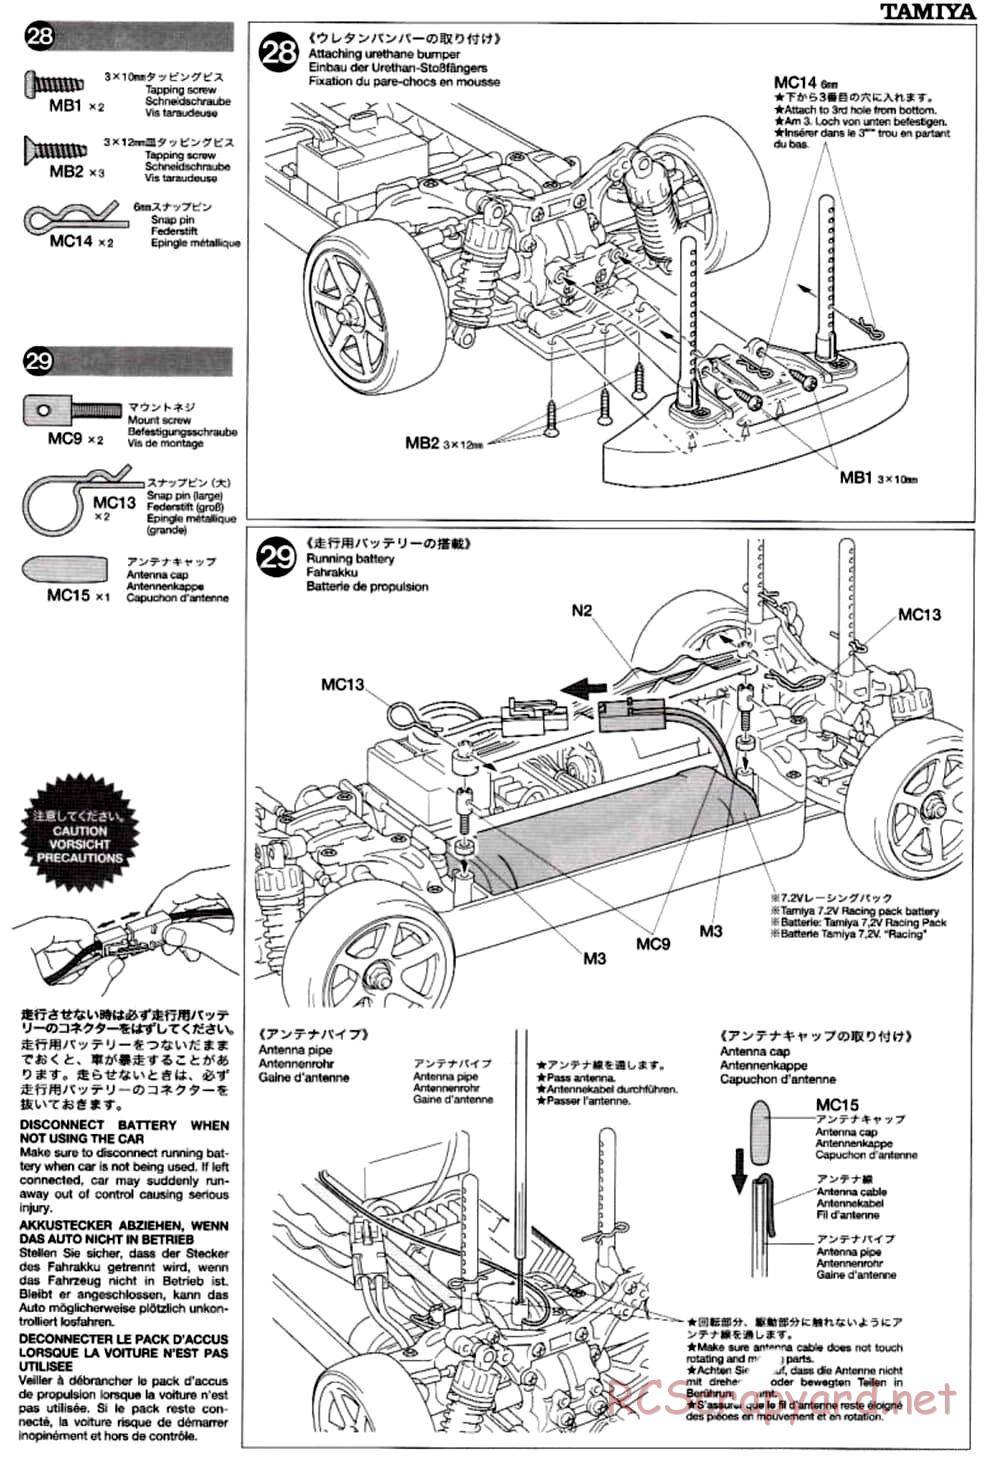 Tamiya - TB-02 Chassis - Manual - Page 17